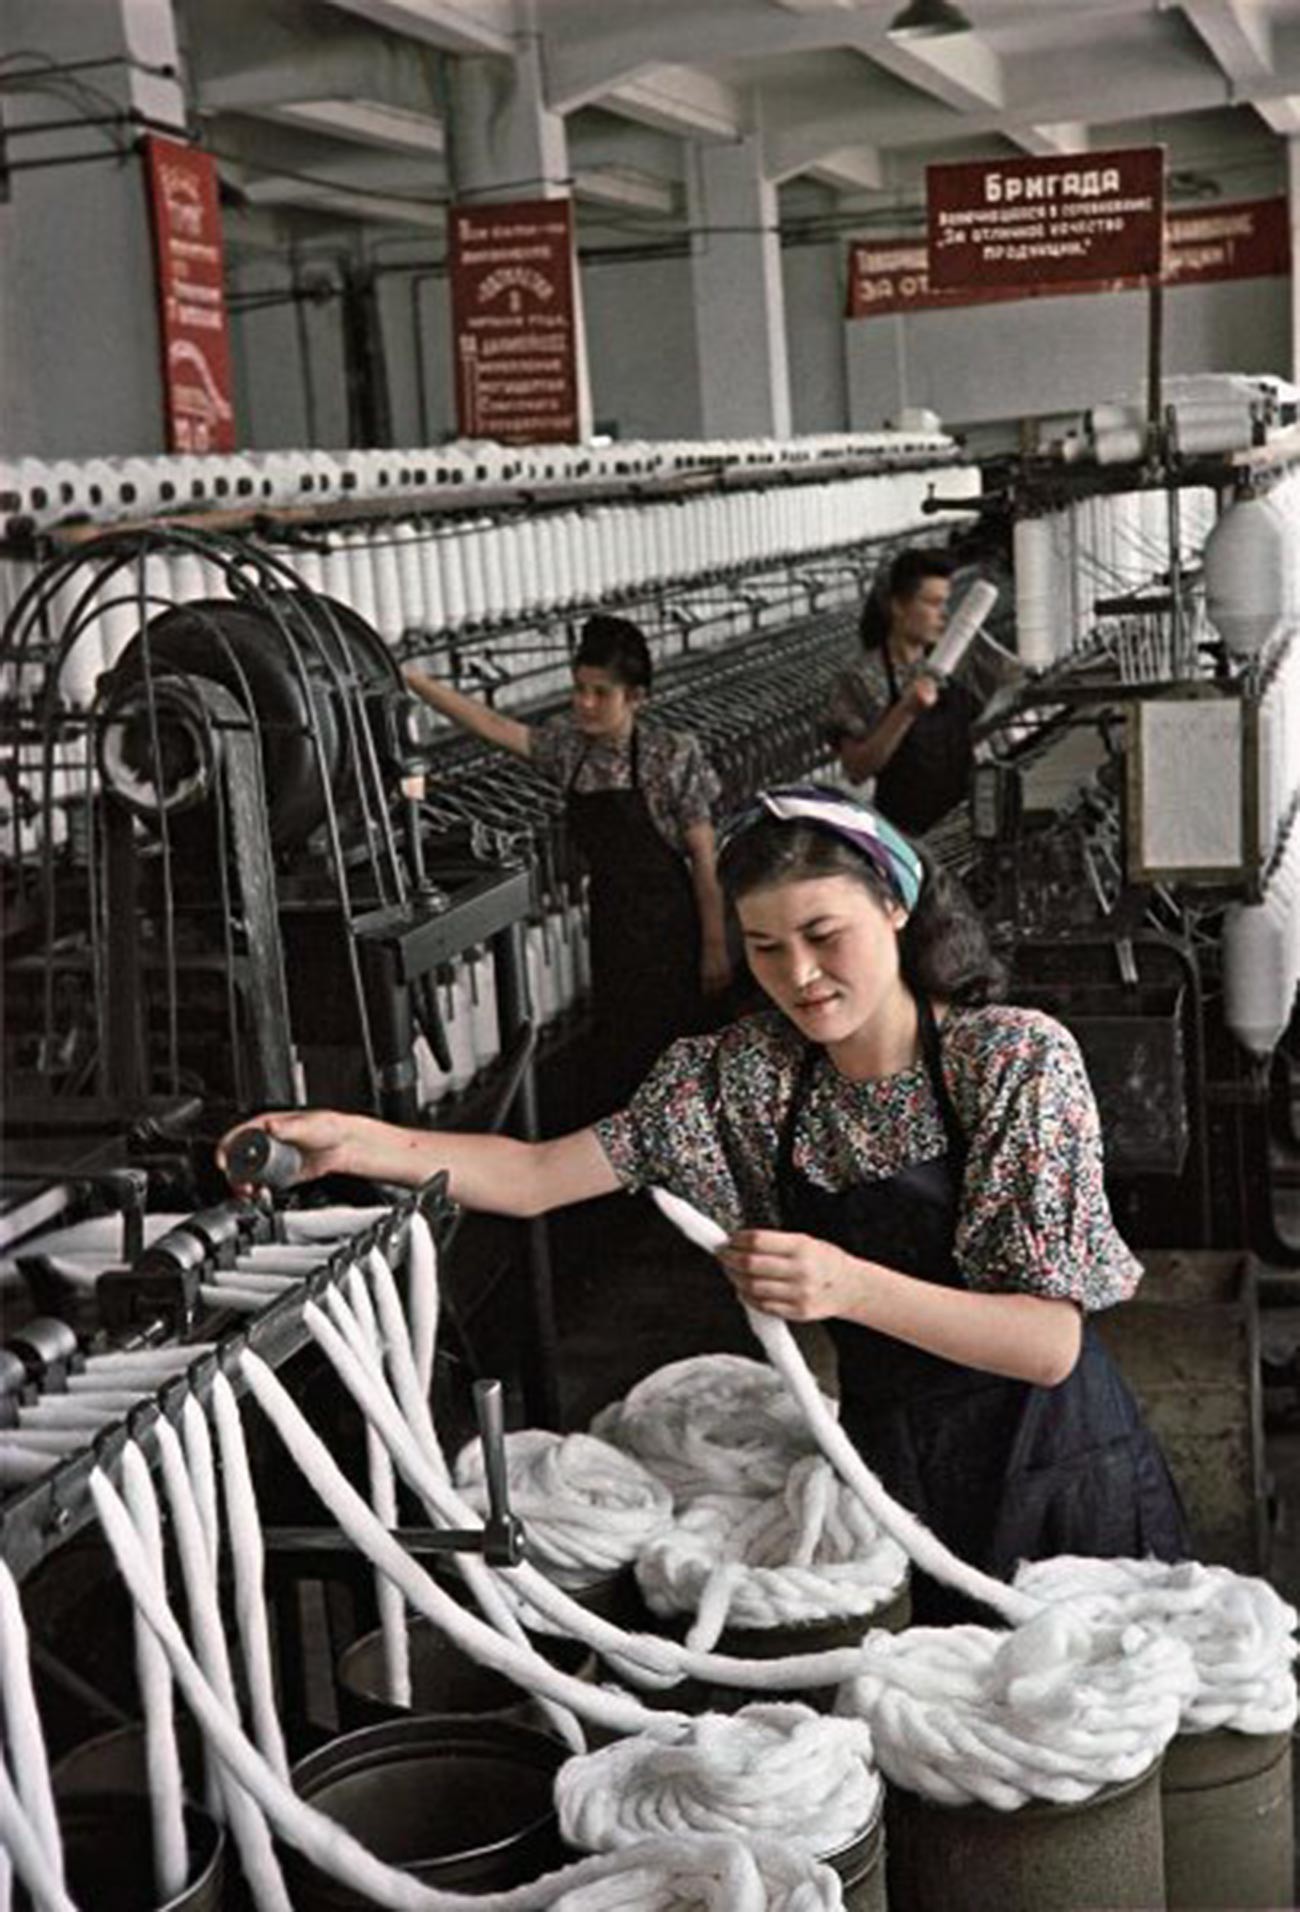 Stakhanov Maria Nasilbayeva, seorang pekerja di pabrik kapas Alma-Ata, yang besar di panti asuhan. Timnya memenuhi rencana produksi sebesar 200 persen. Foto ini adalah arsip majalah Ogonyok, 1950.